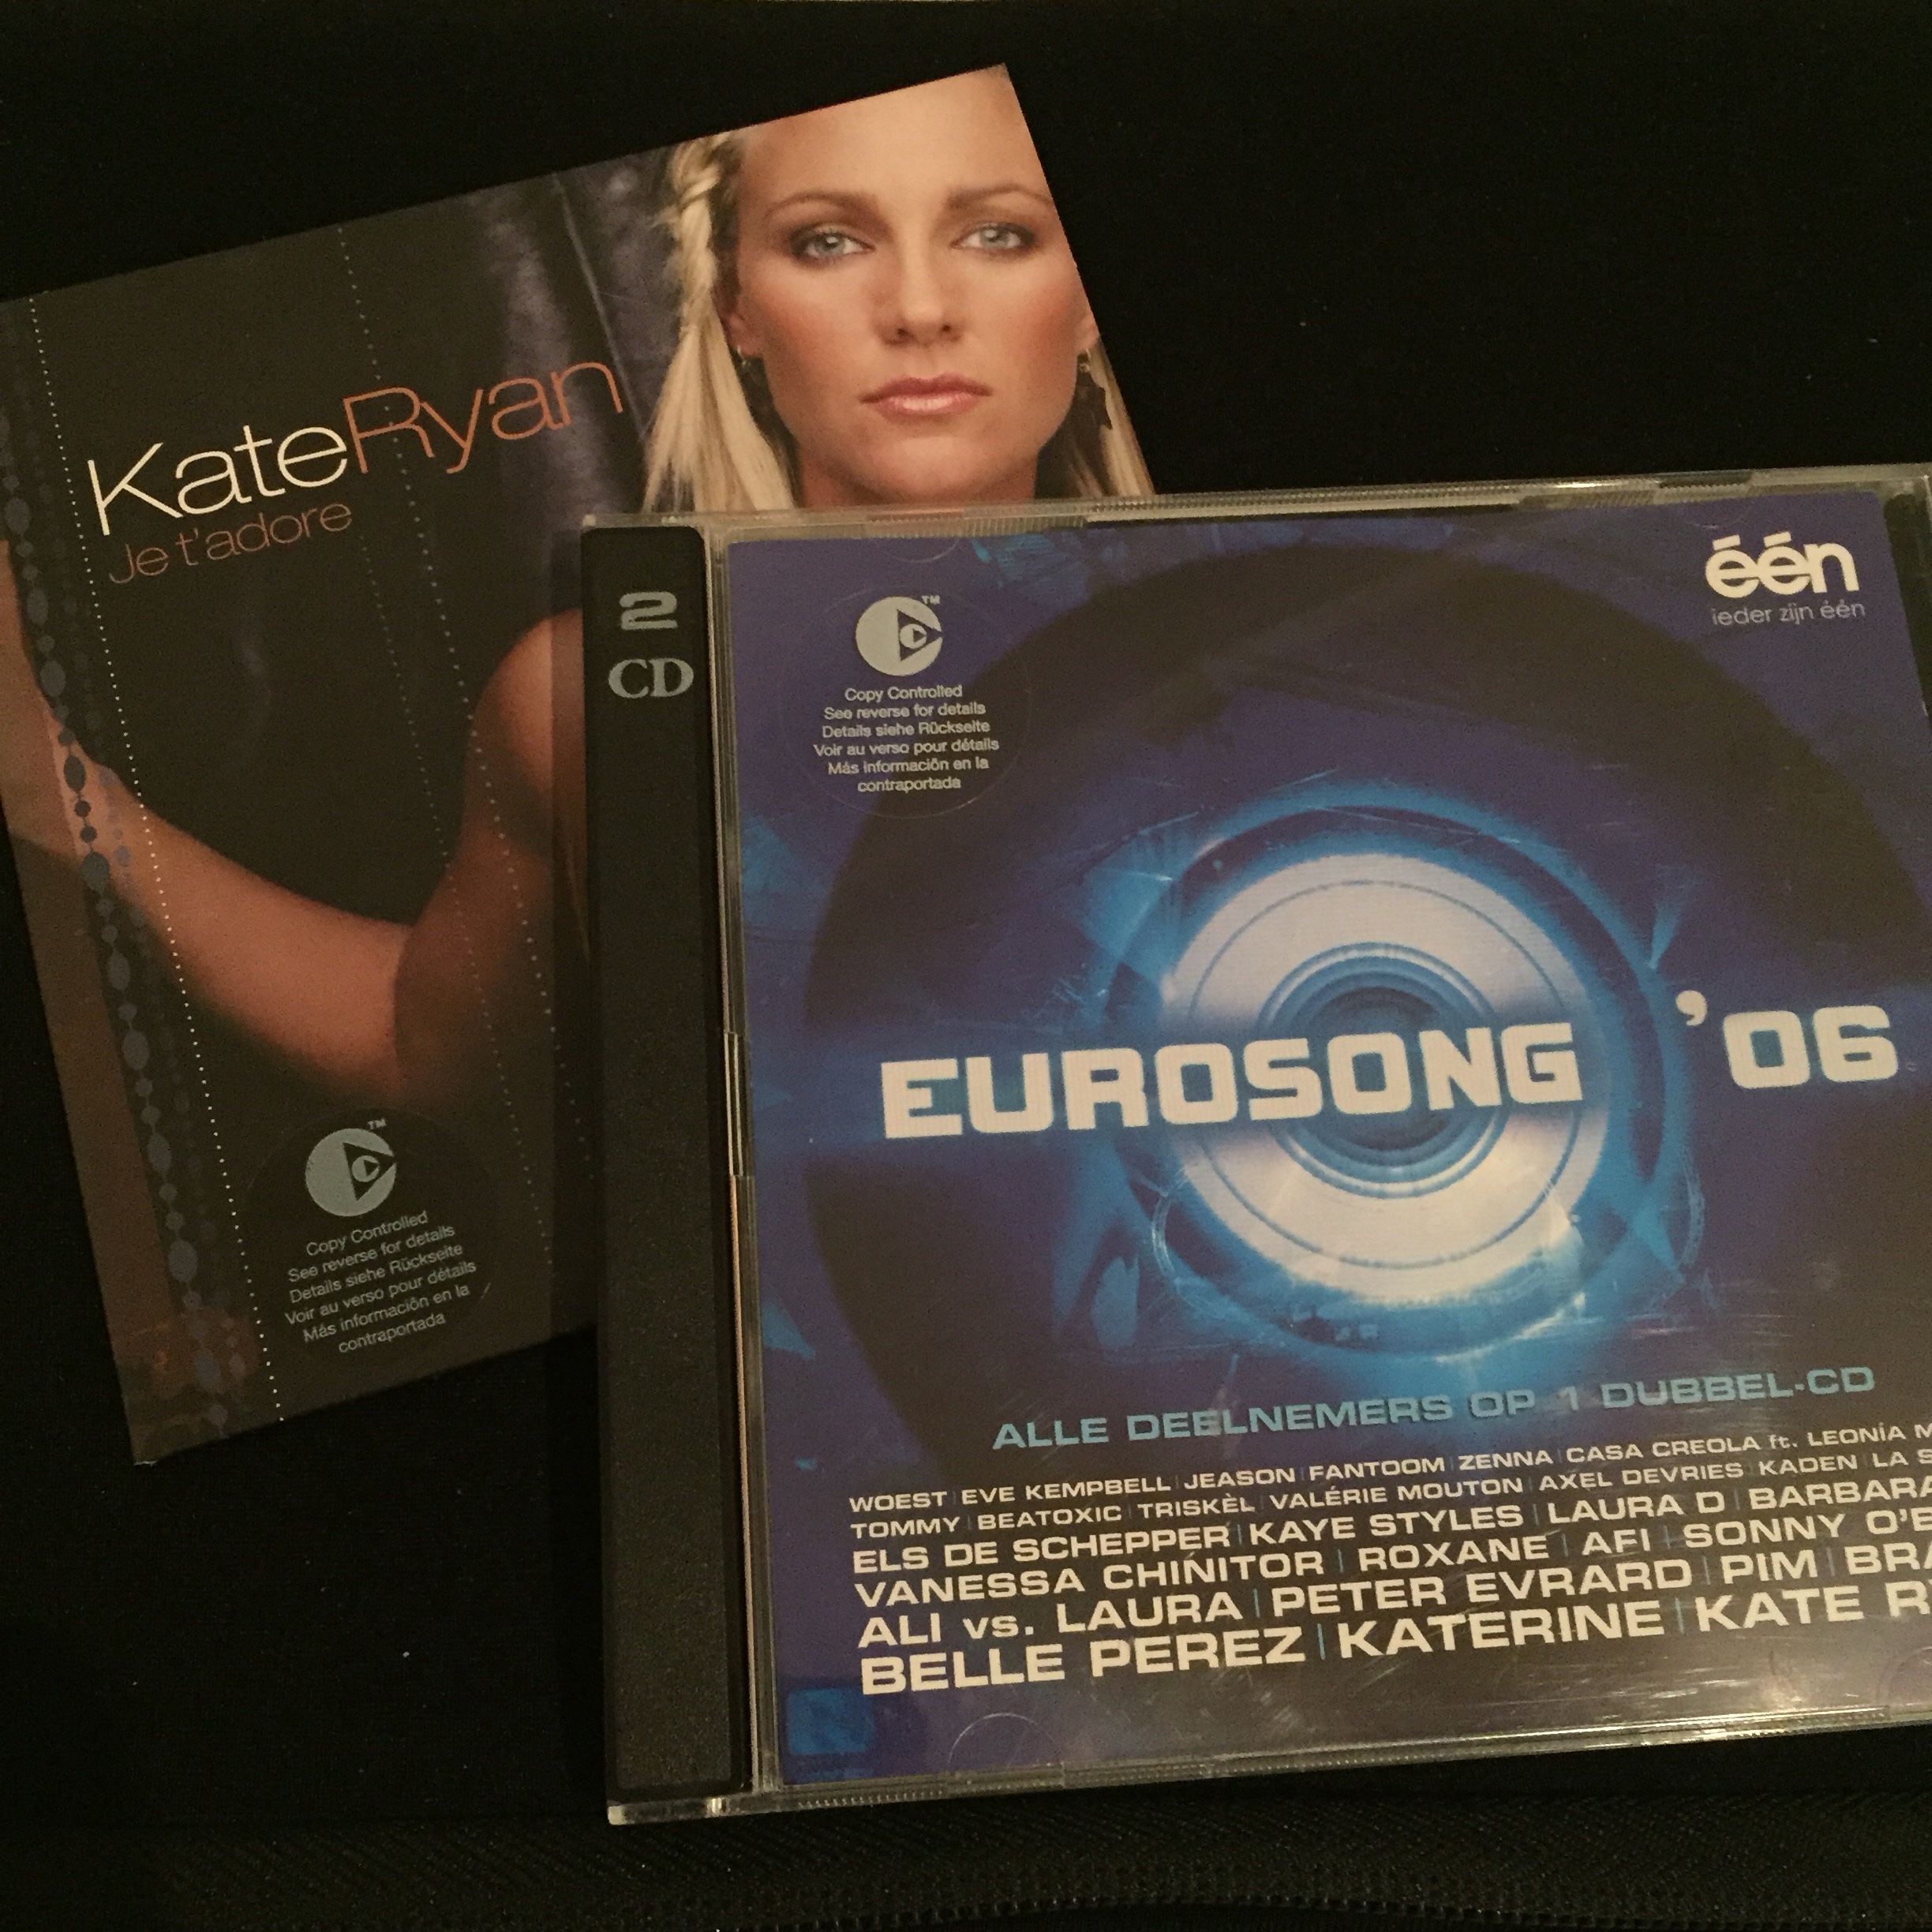 El 'single' de "Je t'adore" y el disco oficial del Eurosong 2006. Foto propia.